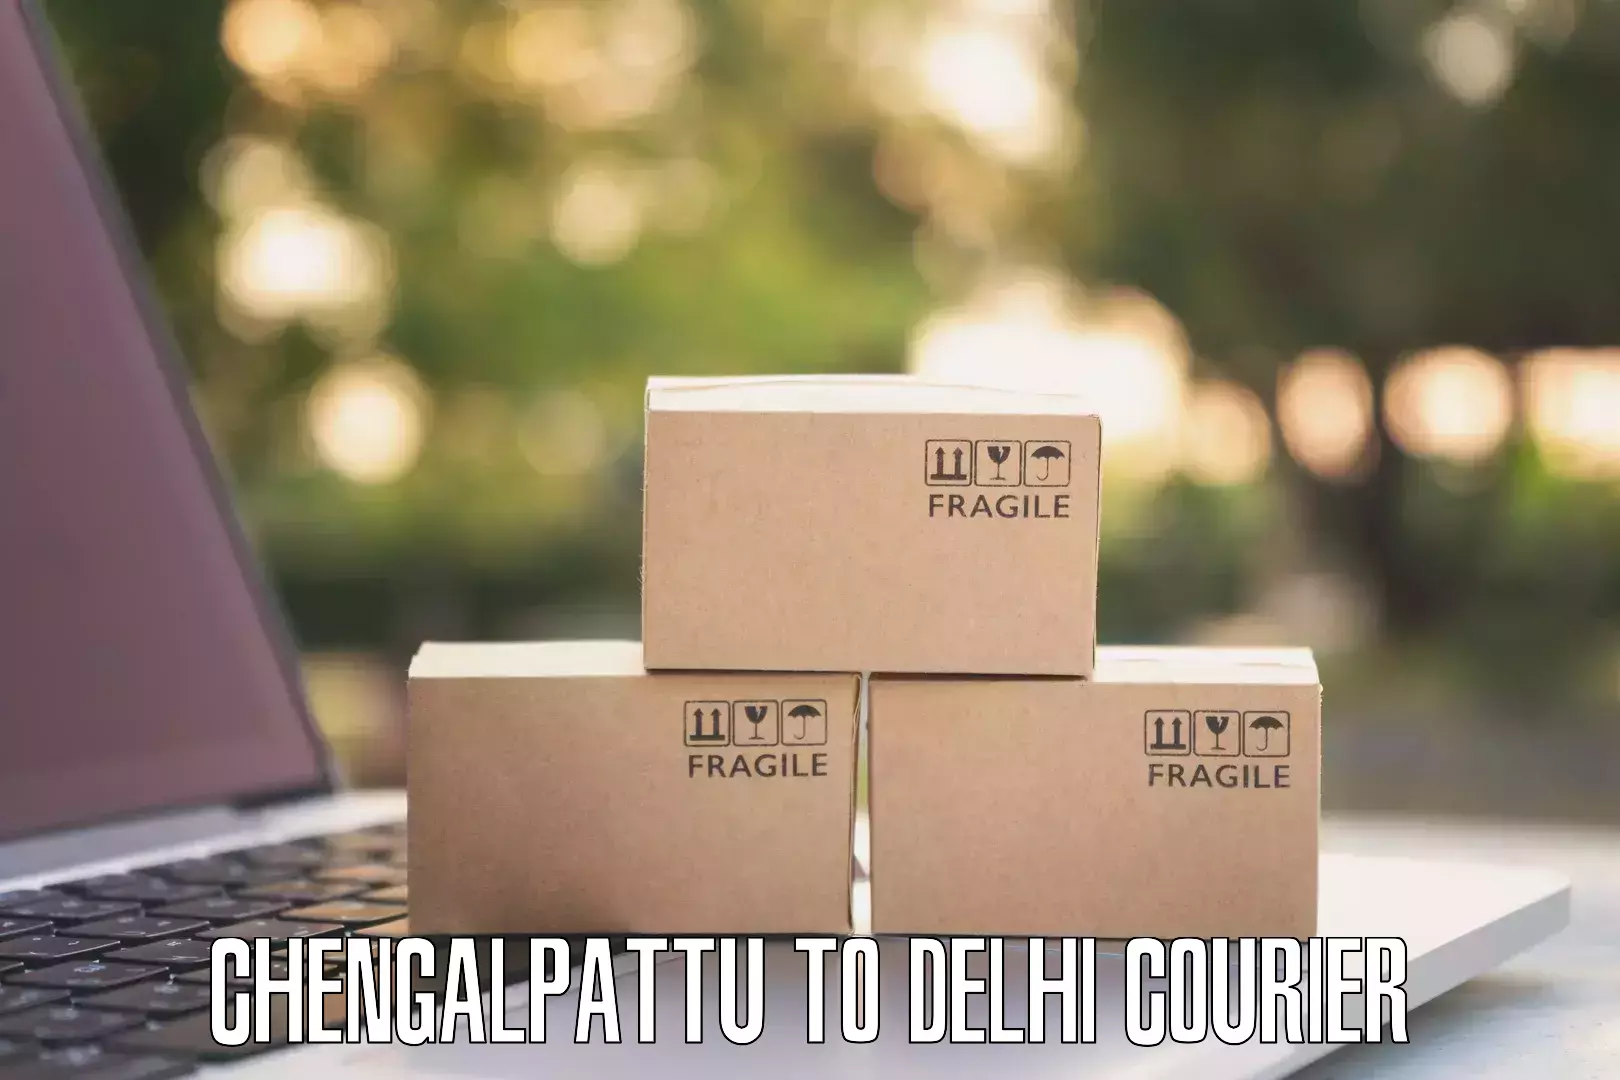 Quality courier services Chengalpattu to Jamia Millia Islamia New Delhi